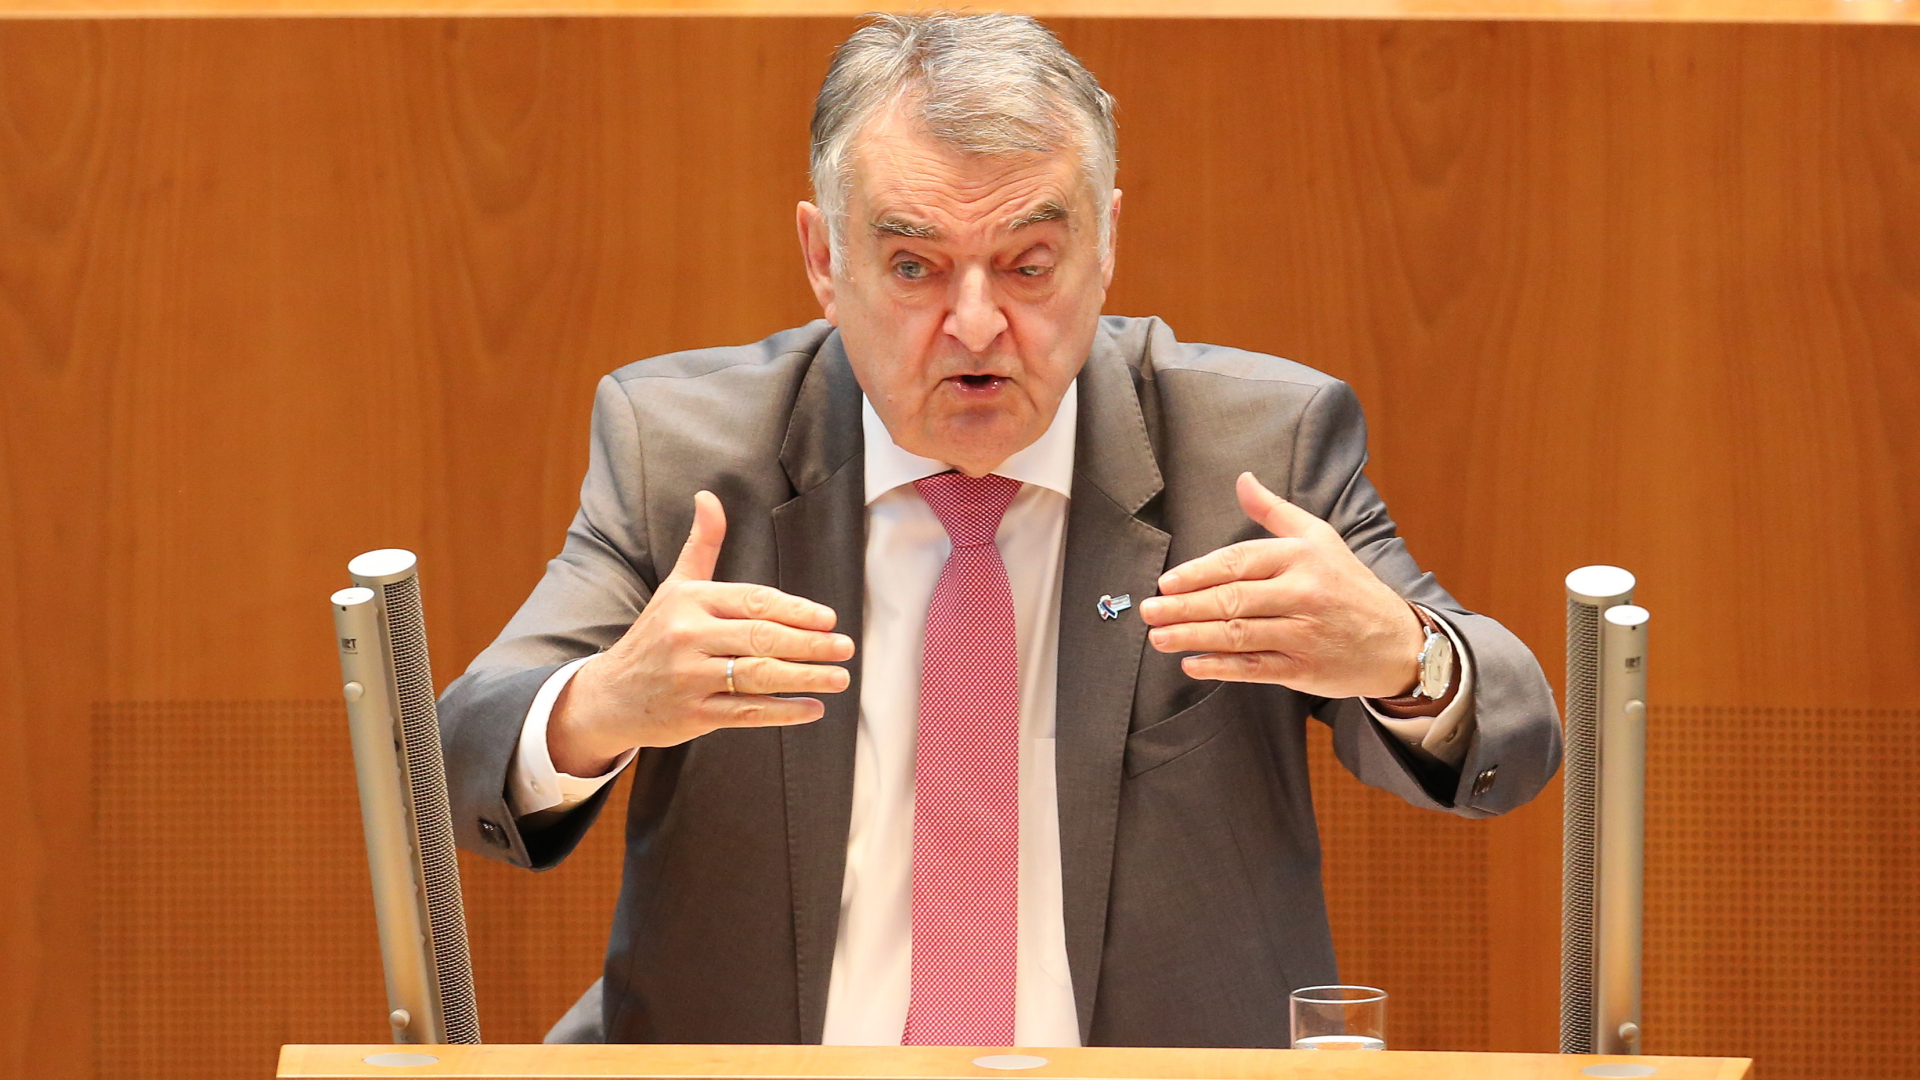 NRW-Innenminister Herbert Reuel spricht im Landtag von Nordrhein-Westfalen | dpa